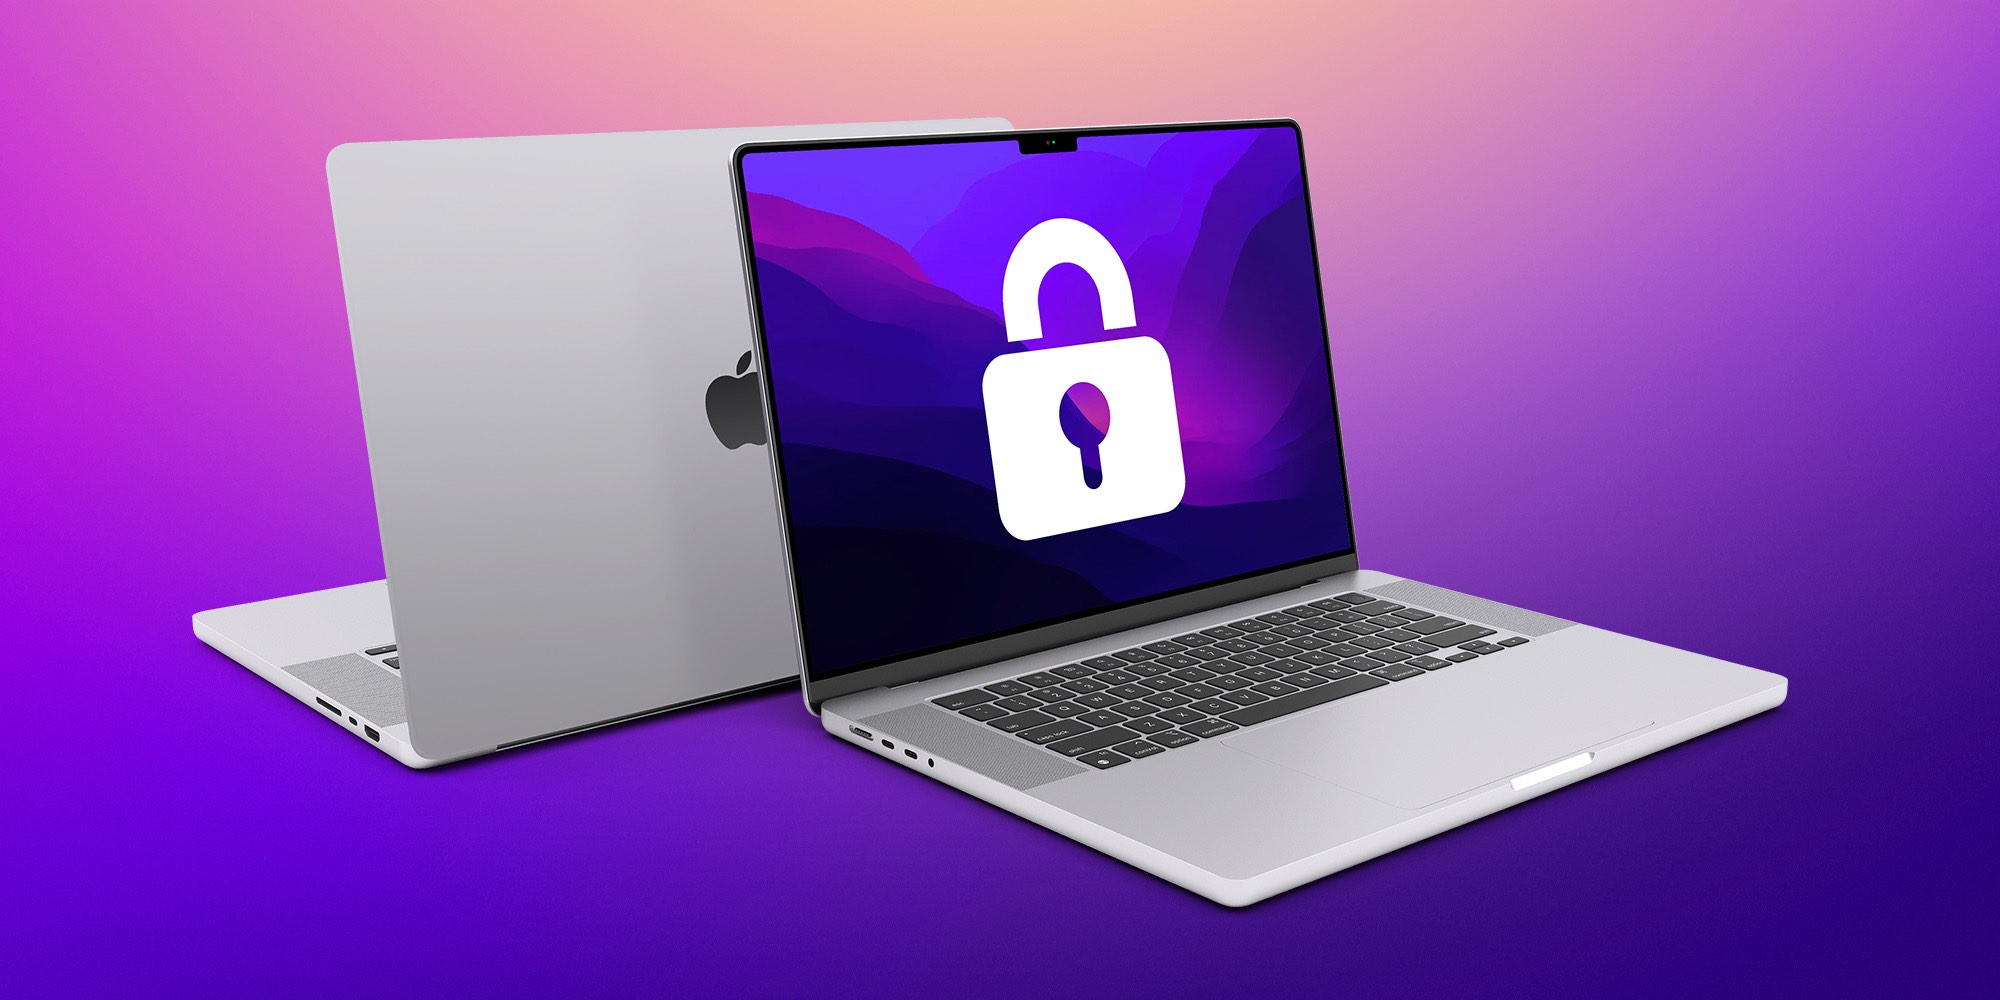 Khảo sát của IDC cho thấy khả năng bảo mật của máy tính Mac không phải tin đồn vô căn cứ - Ảnh 1.